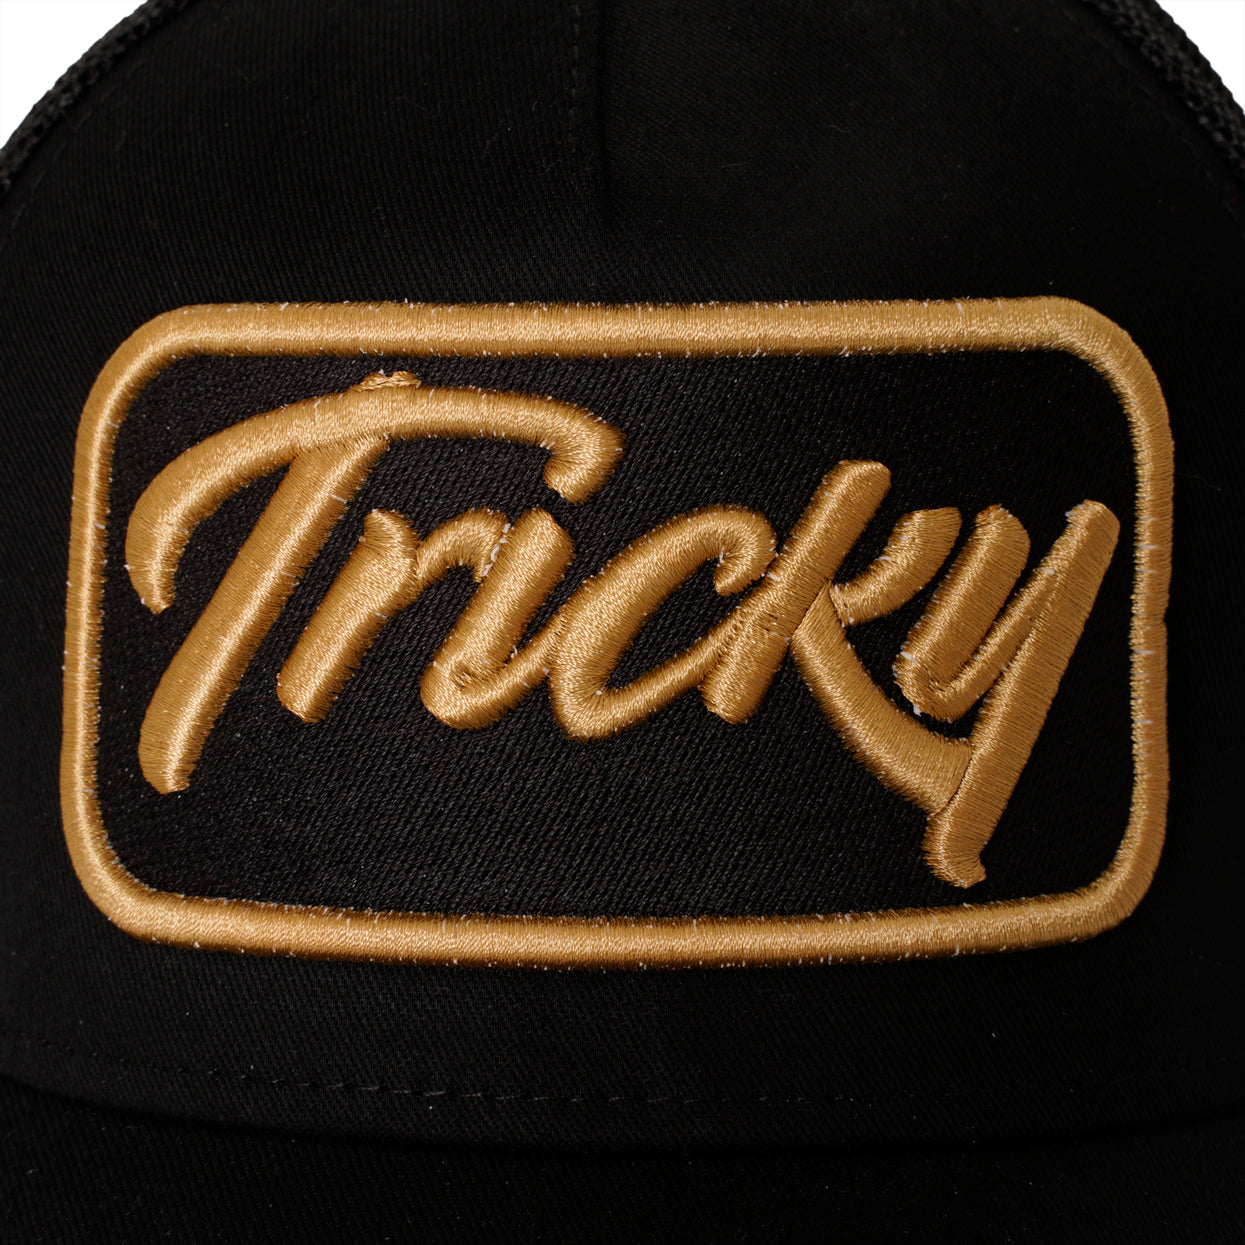 TRICKY PLATE LOGO MESH TRUCKER CAP BLACK GOLD